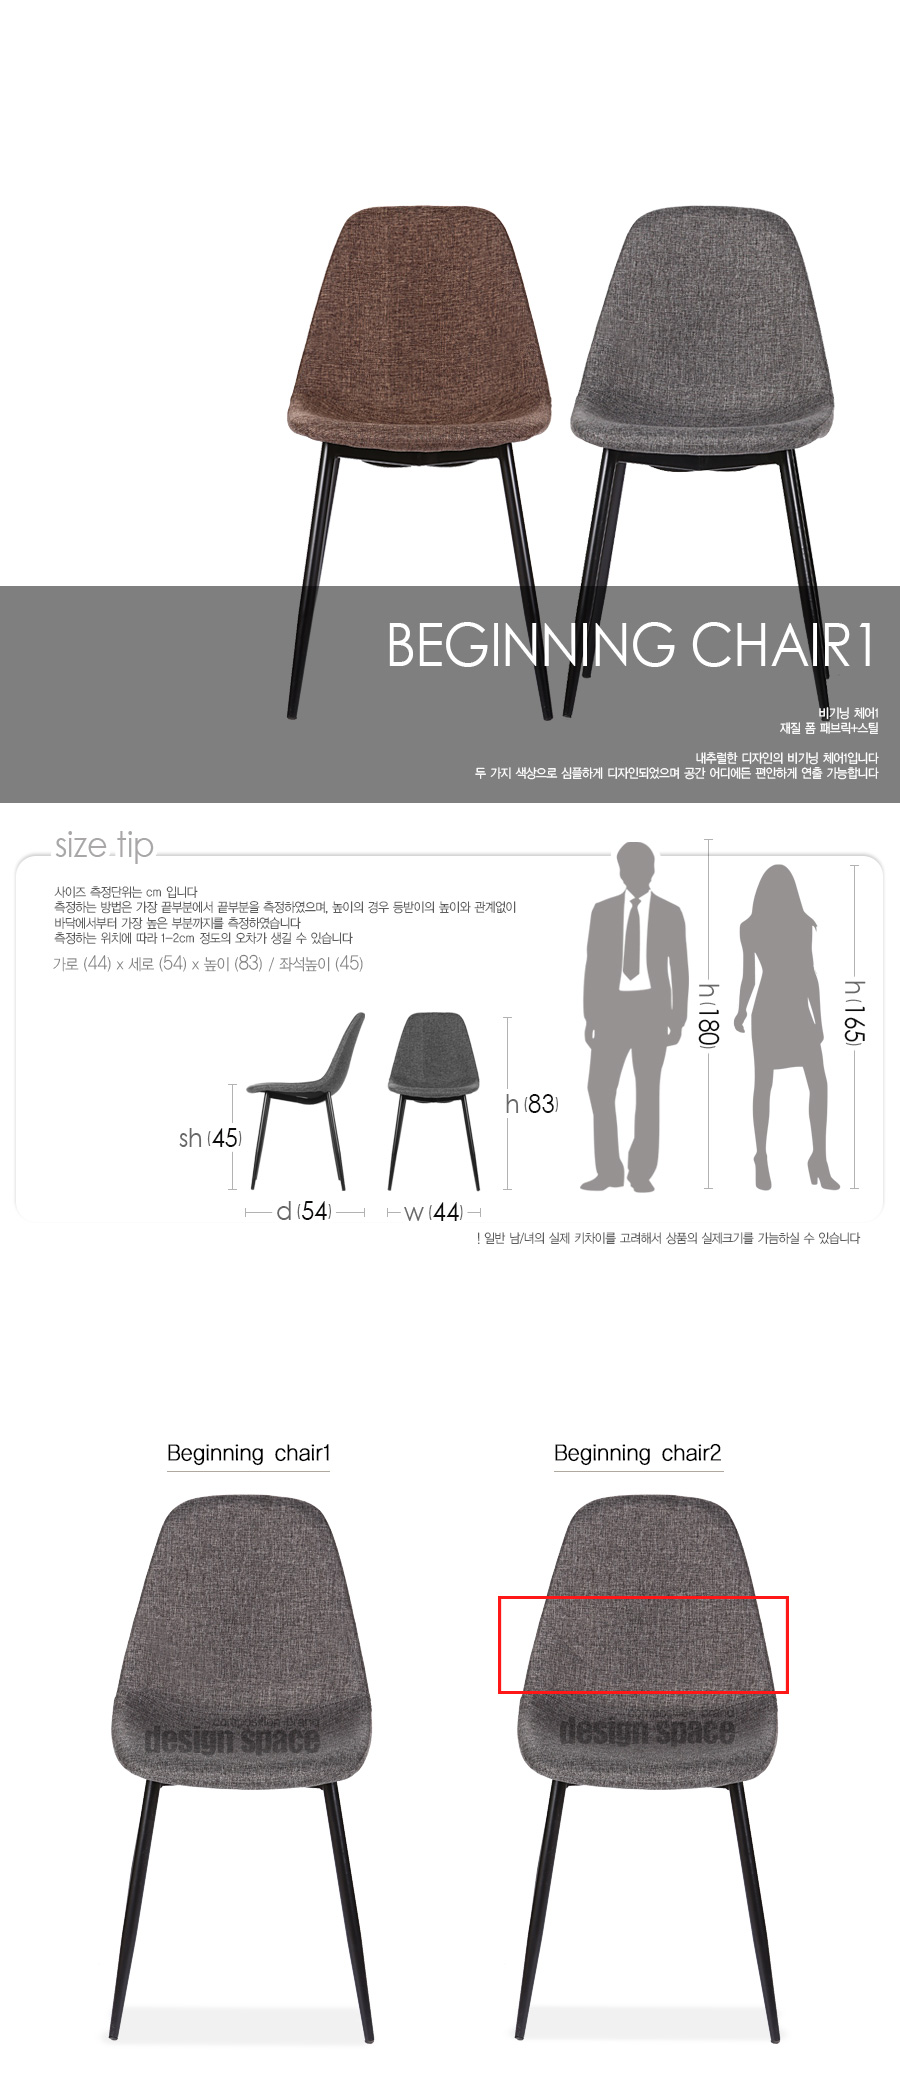 beginning-chair1_01.jpg